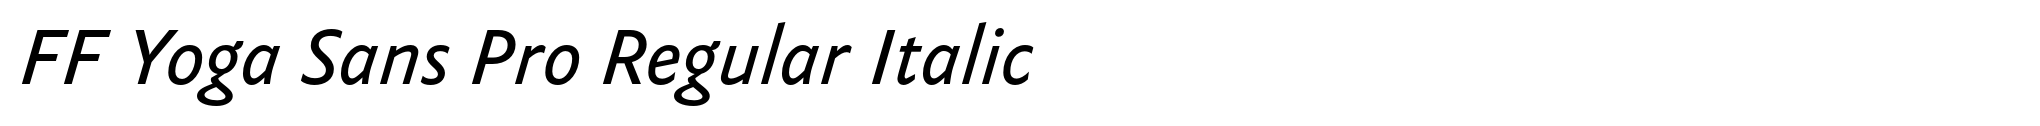 FF Yoga Sans Pro Regular Italic image